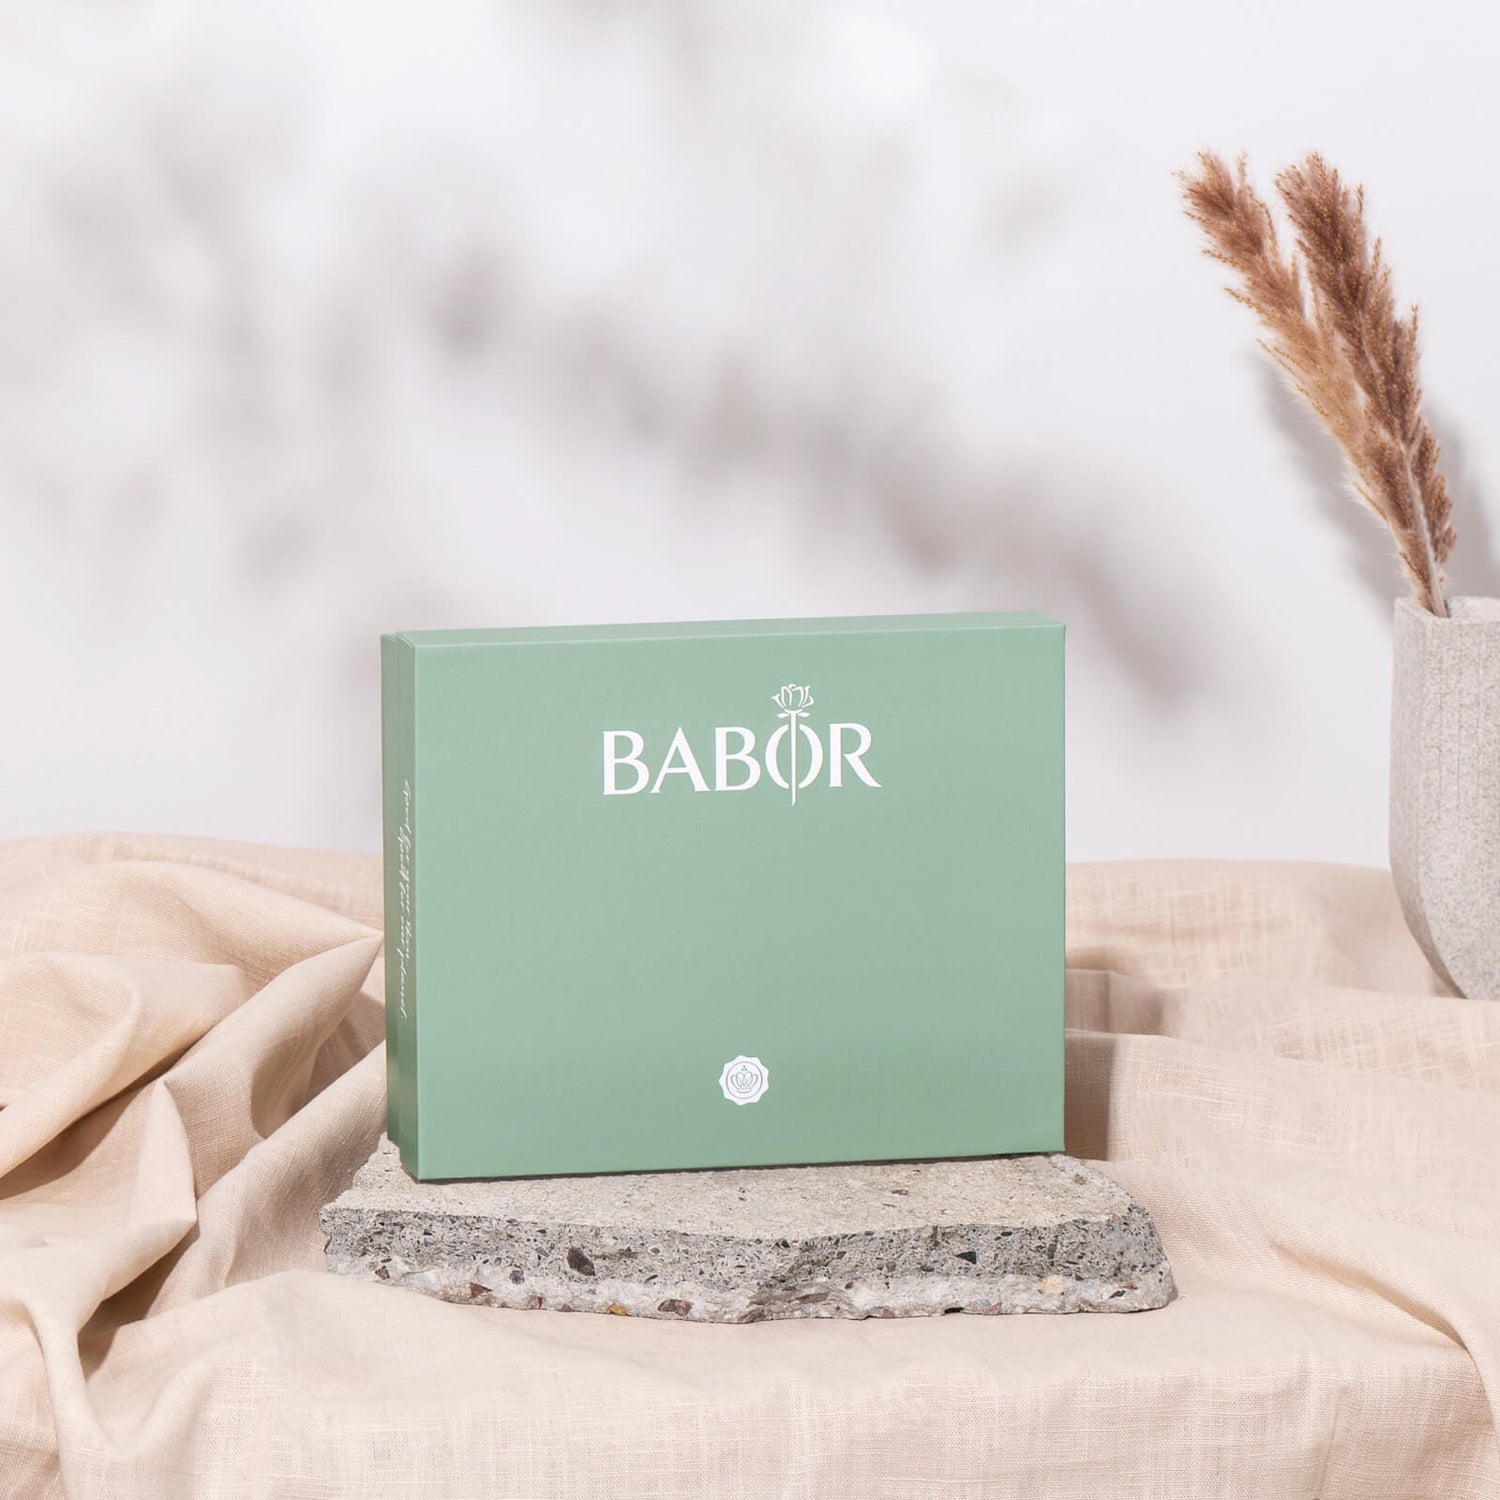 BABOR Limited Edition Box im Wert von 130€